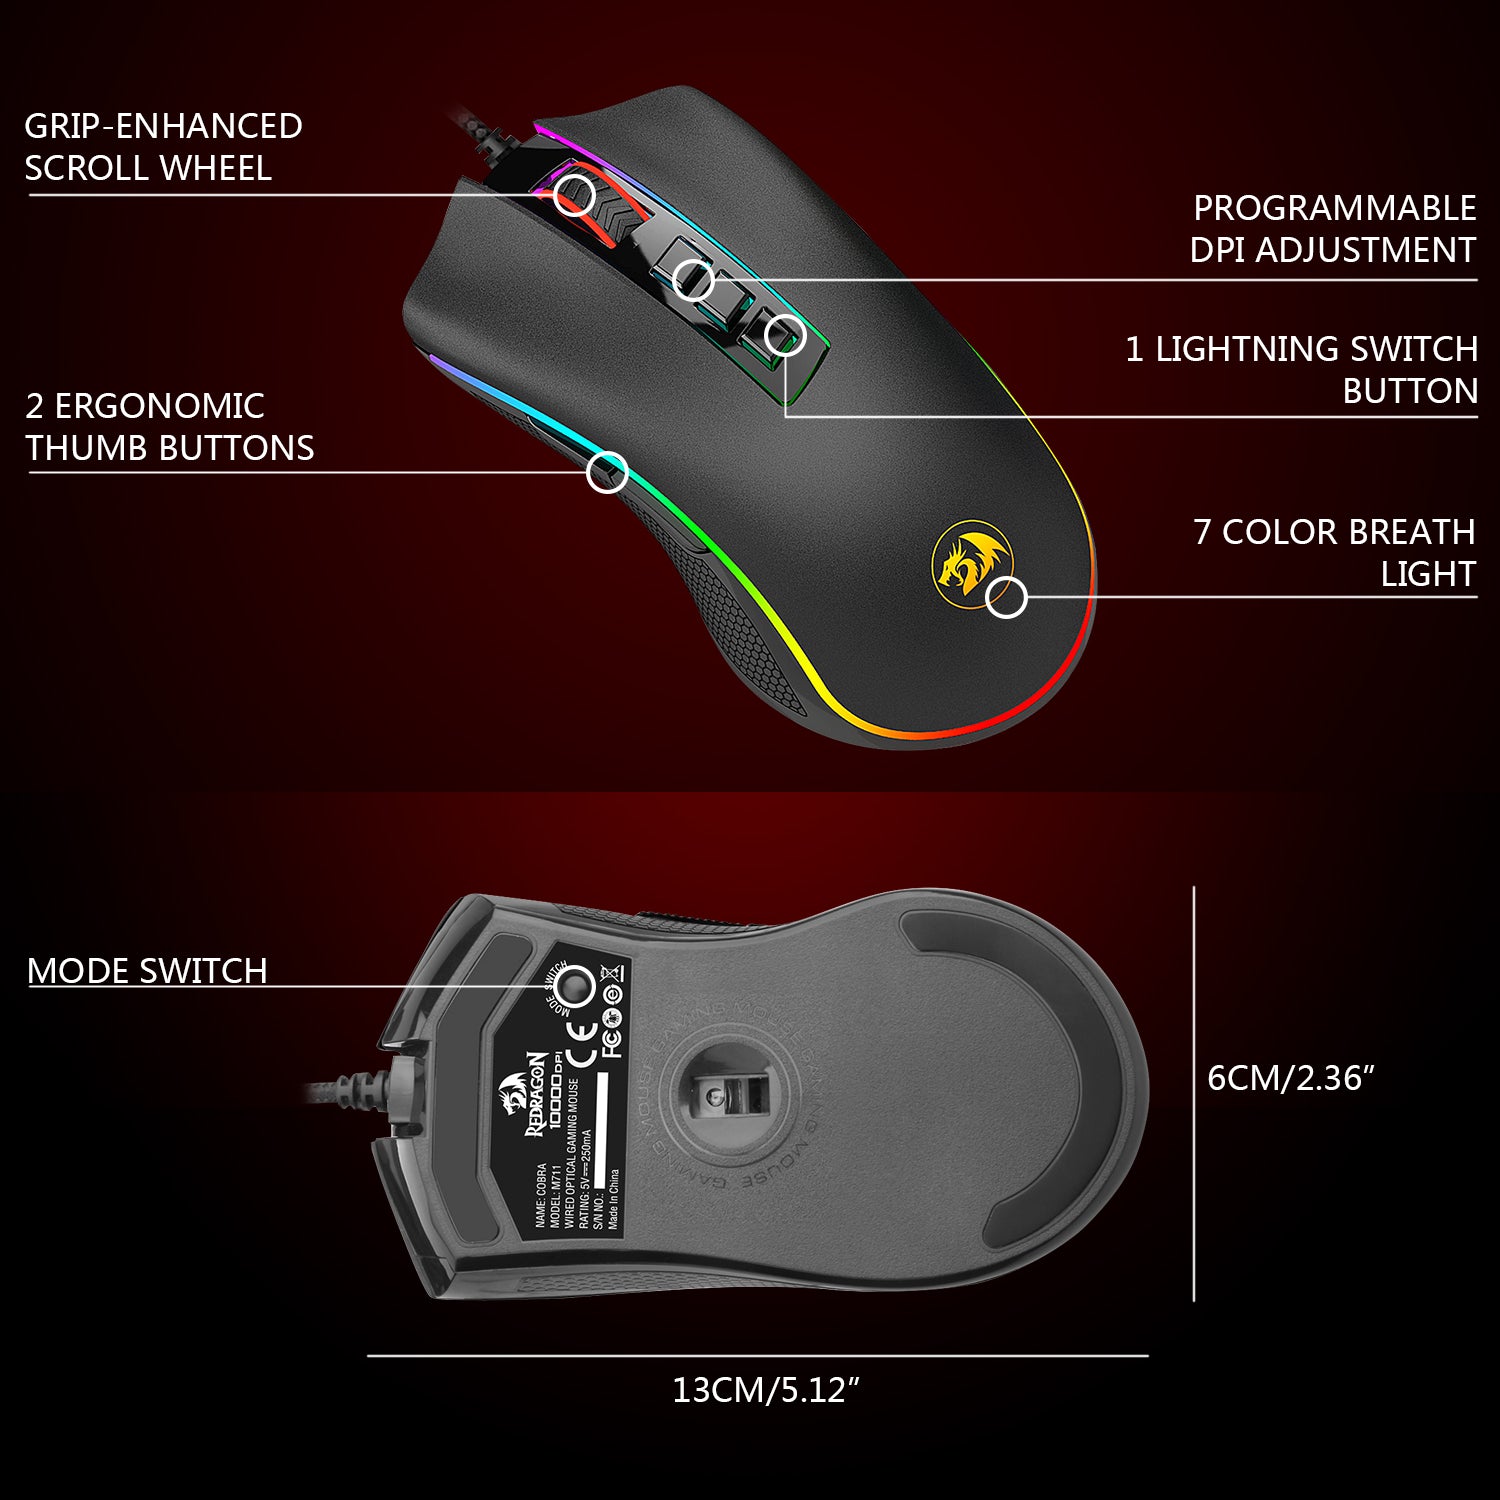 Mouse para jogo Redragon Cobra Chroma M711 preto